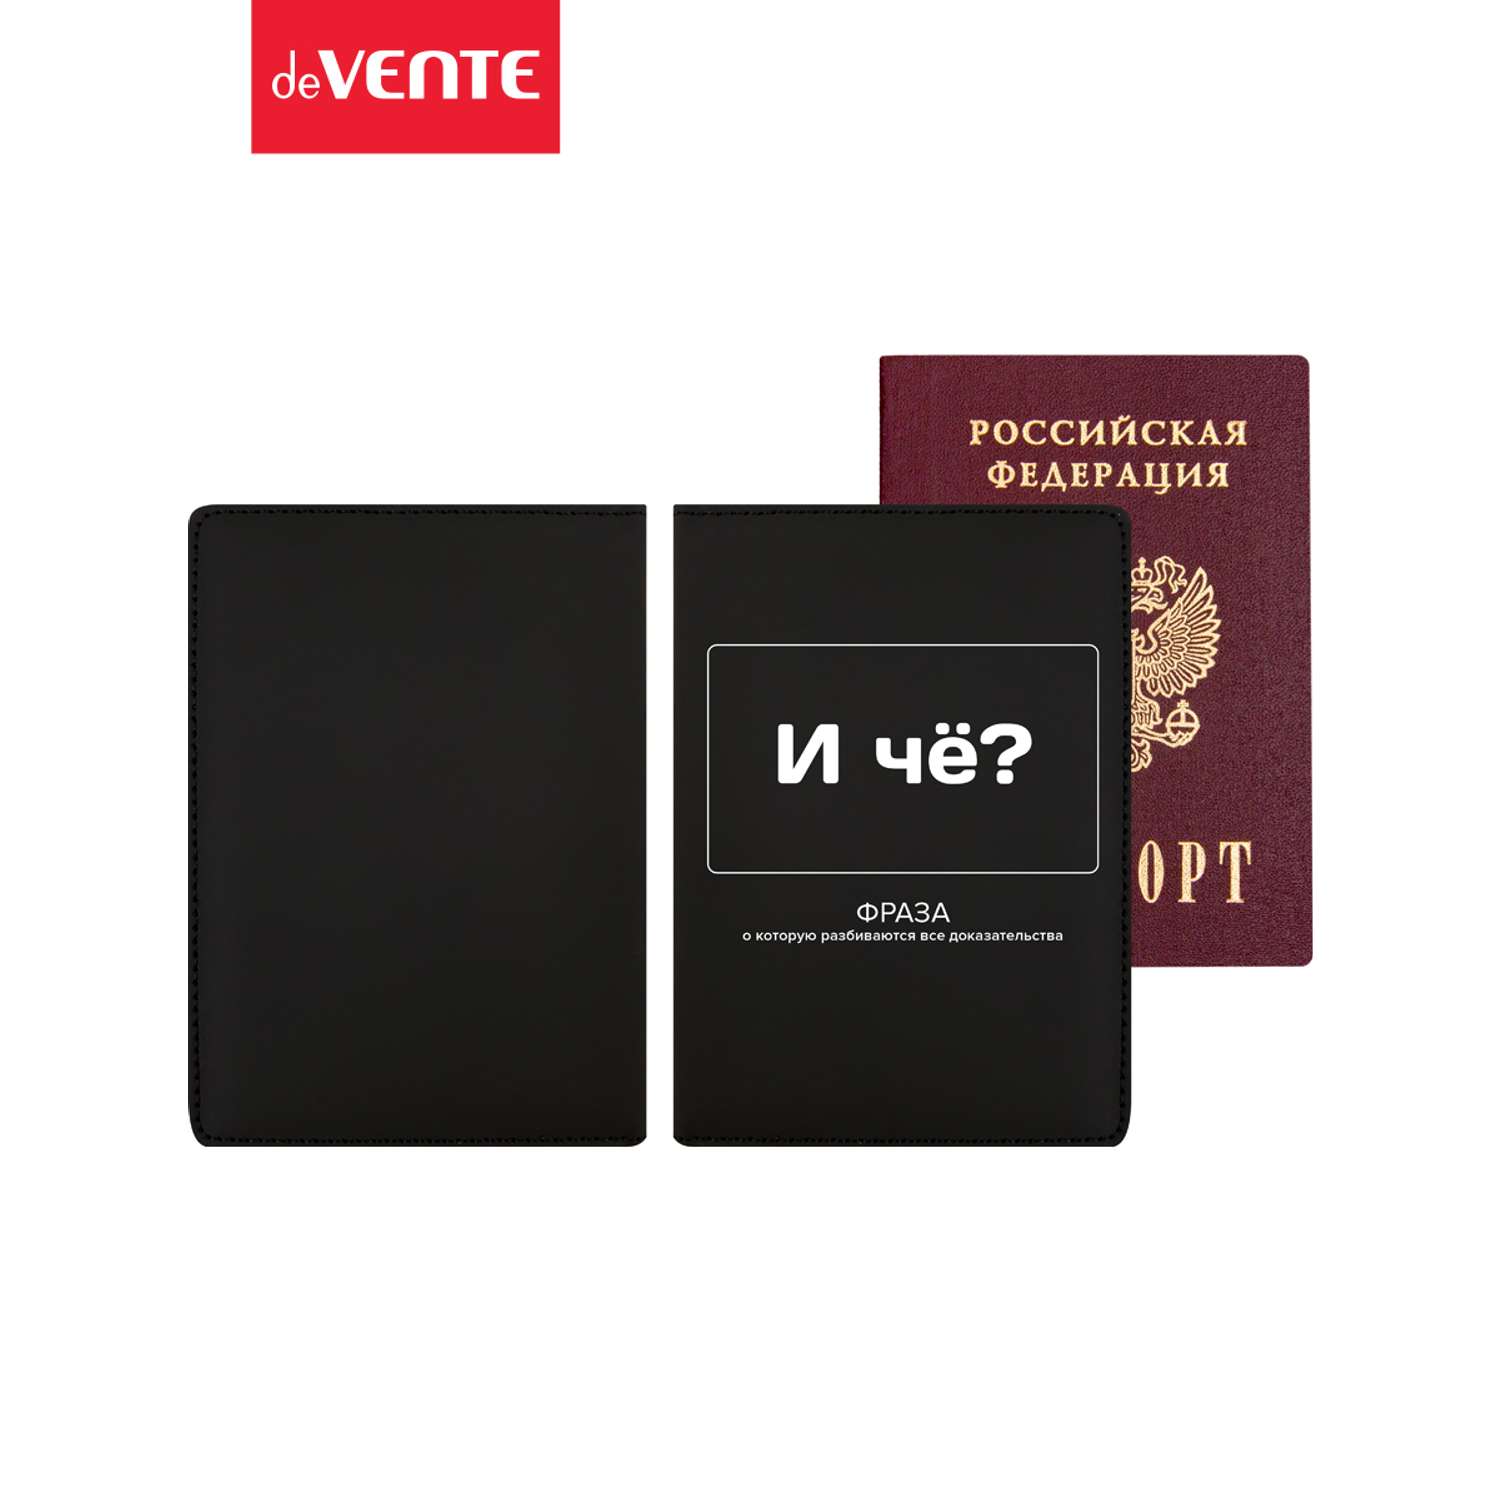 Обложки для паспорта deVENTE искусственная кожа - фото 3